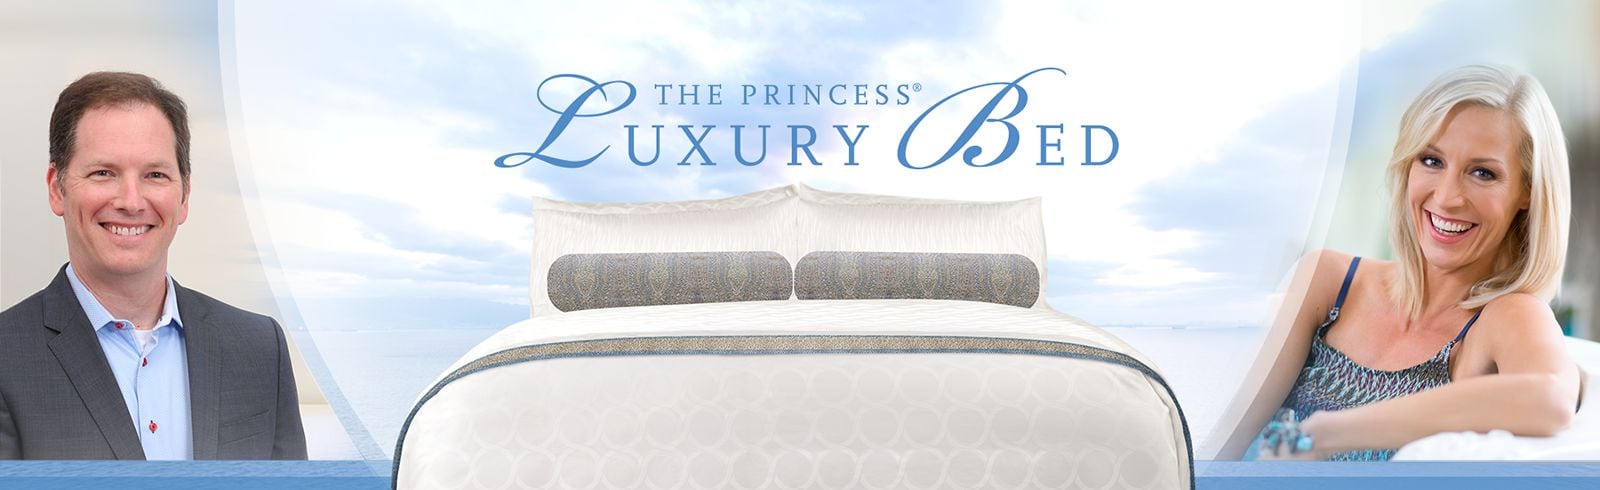 princess cruise ship pillows